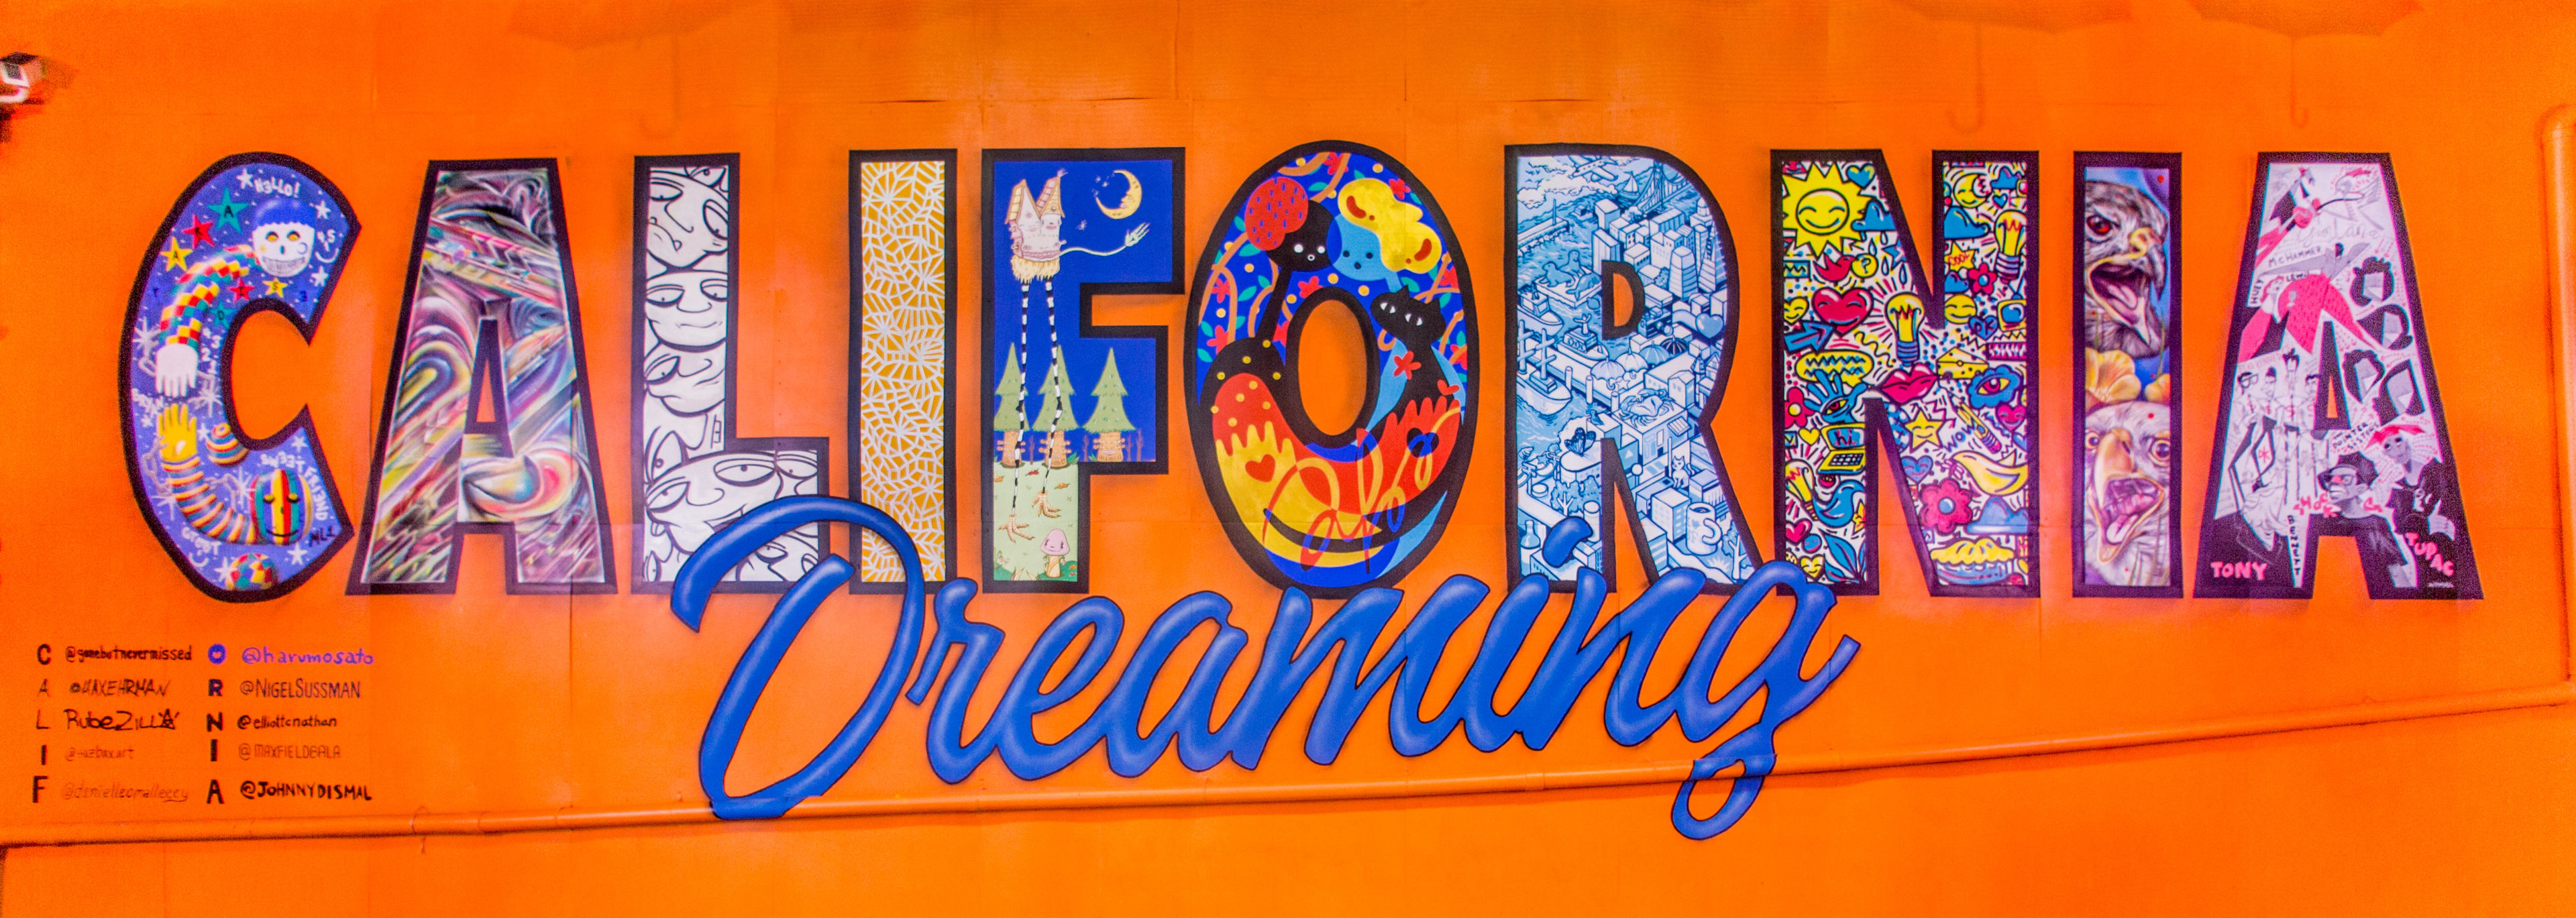 ภาพจิตรกรรมฝาผนังสีสันสดใสที่มีข้อความว่า "California Dreaming" ใน Umbrella Alley, Oakland, CA